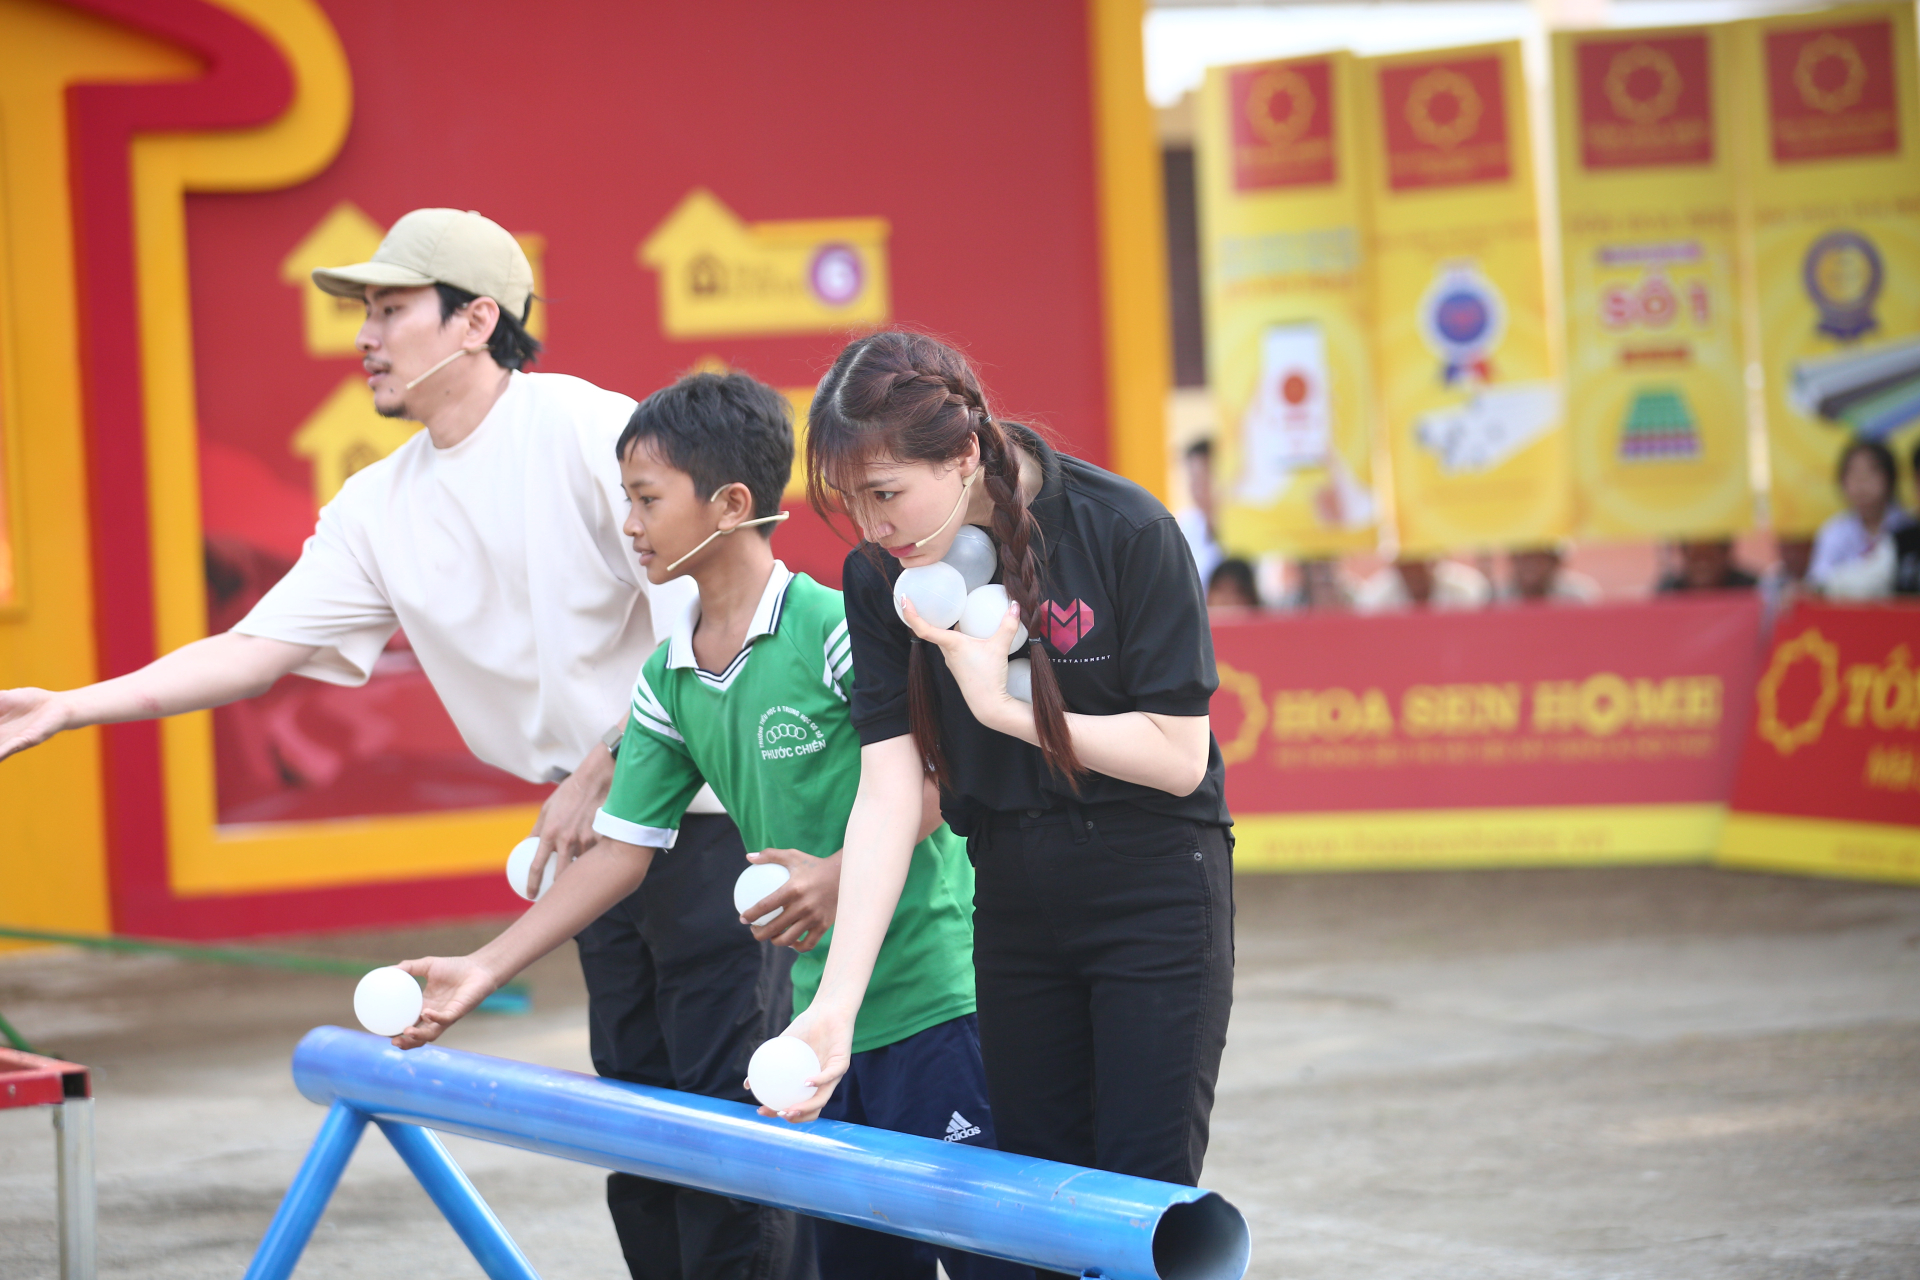 Diễn viên Kiều Minh Tuấn và ca sĩ Hòa Minzy góp sức mang về giải thưởng 95 triệu cho trẻ em mồ côi - ảnh 2